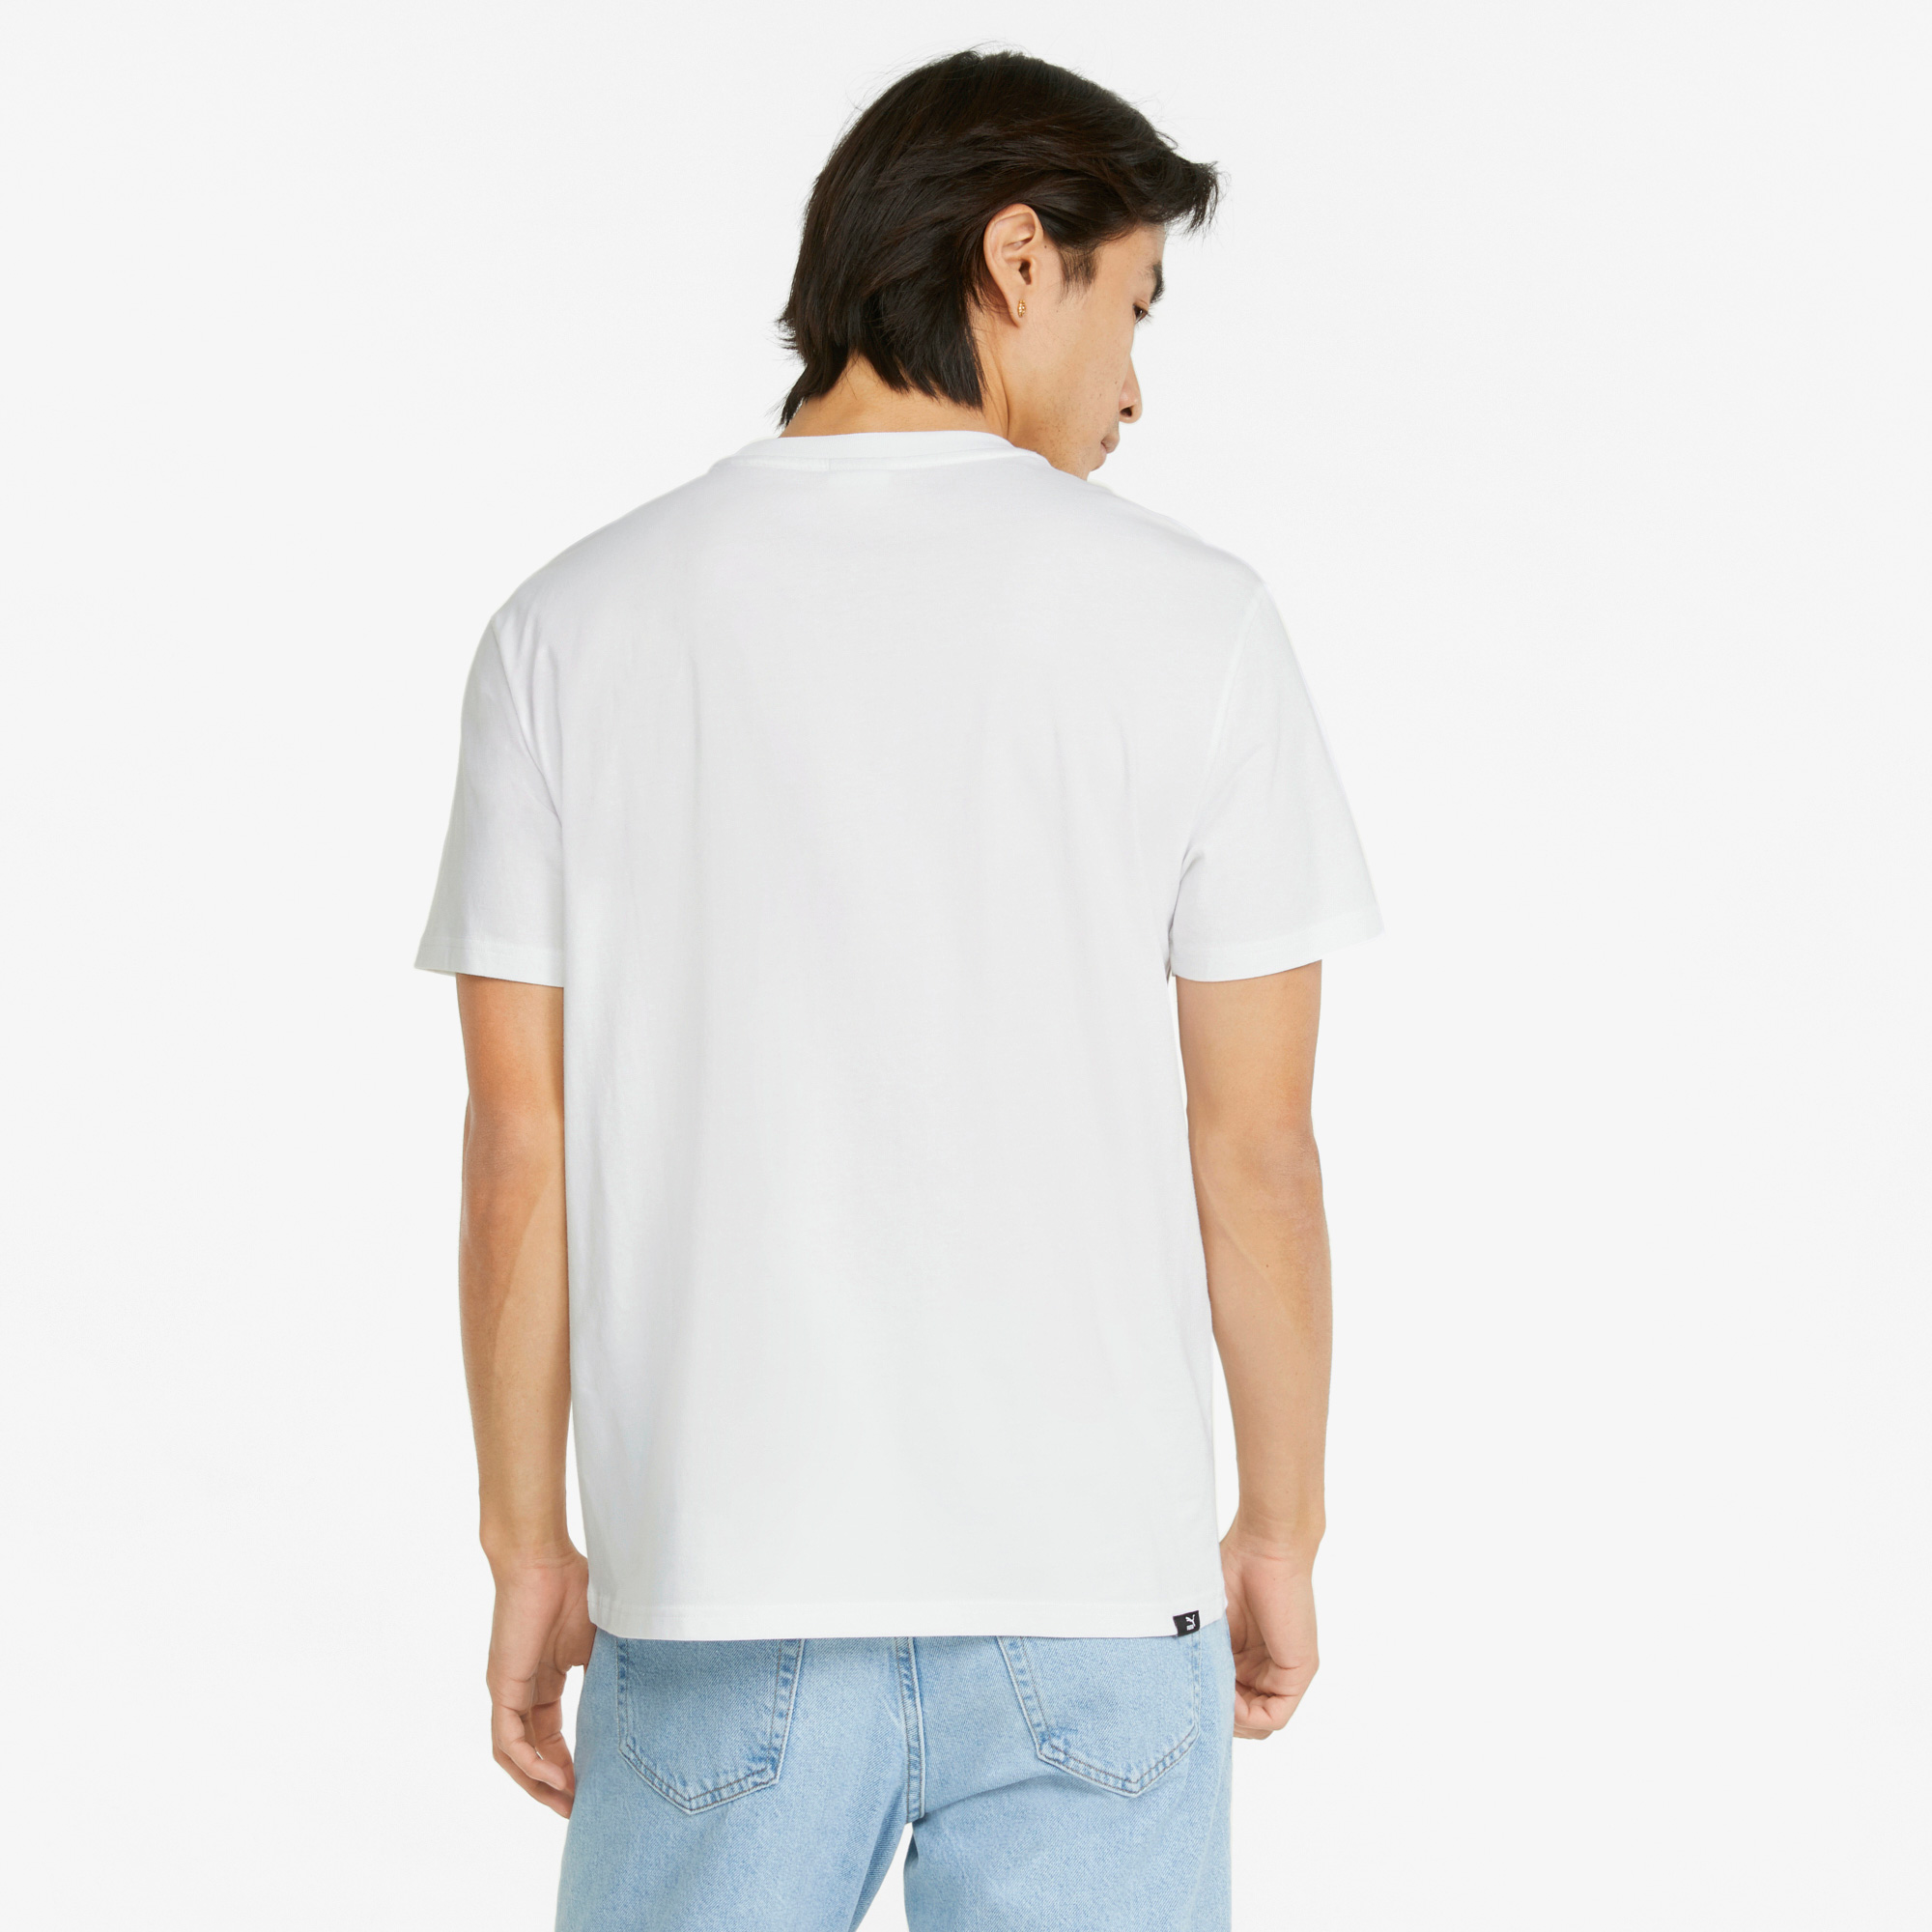 Puma Brand Love Multiplacement Erkek Beyaz T-Shirt